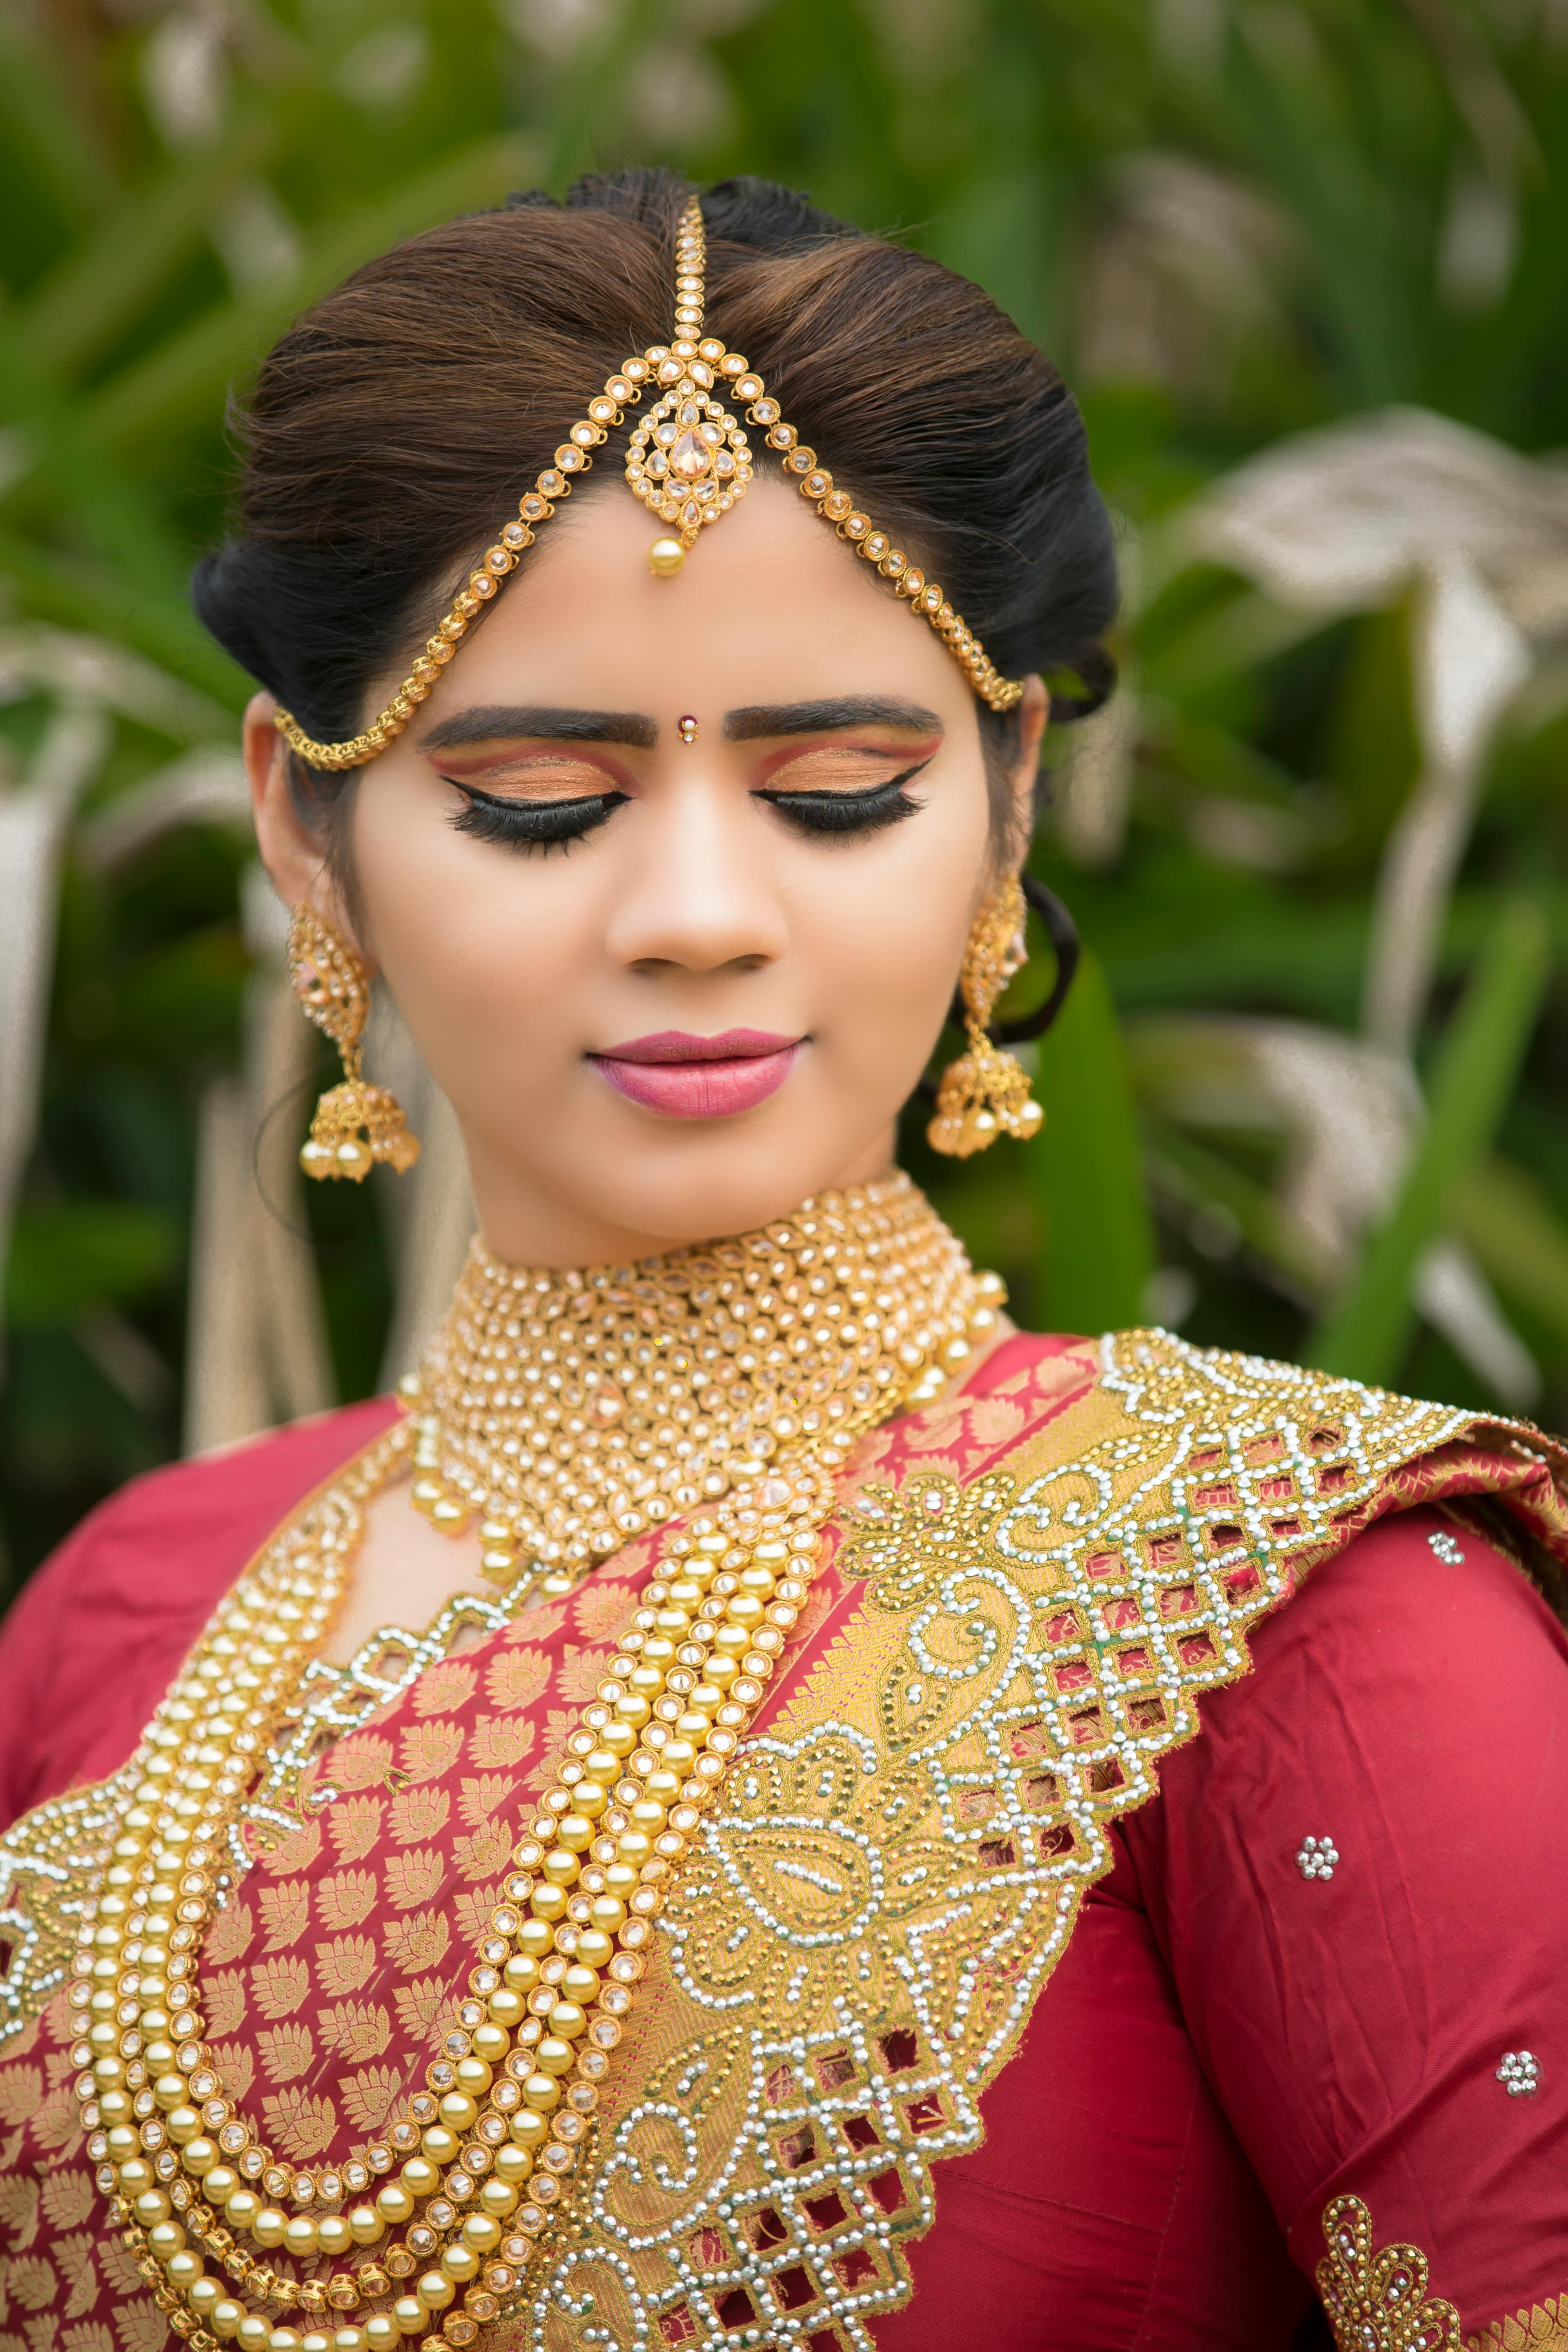 Best Indian Bridal Hairstyles from StyleCraze